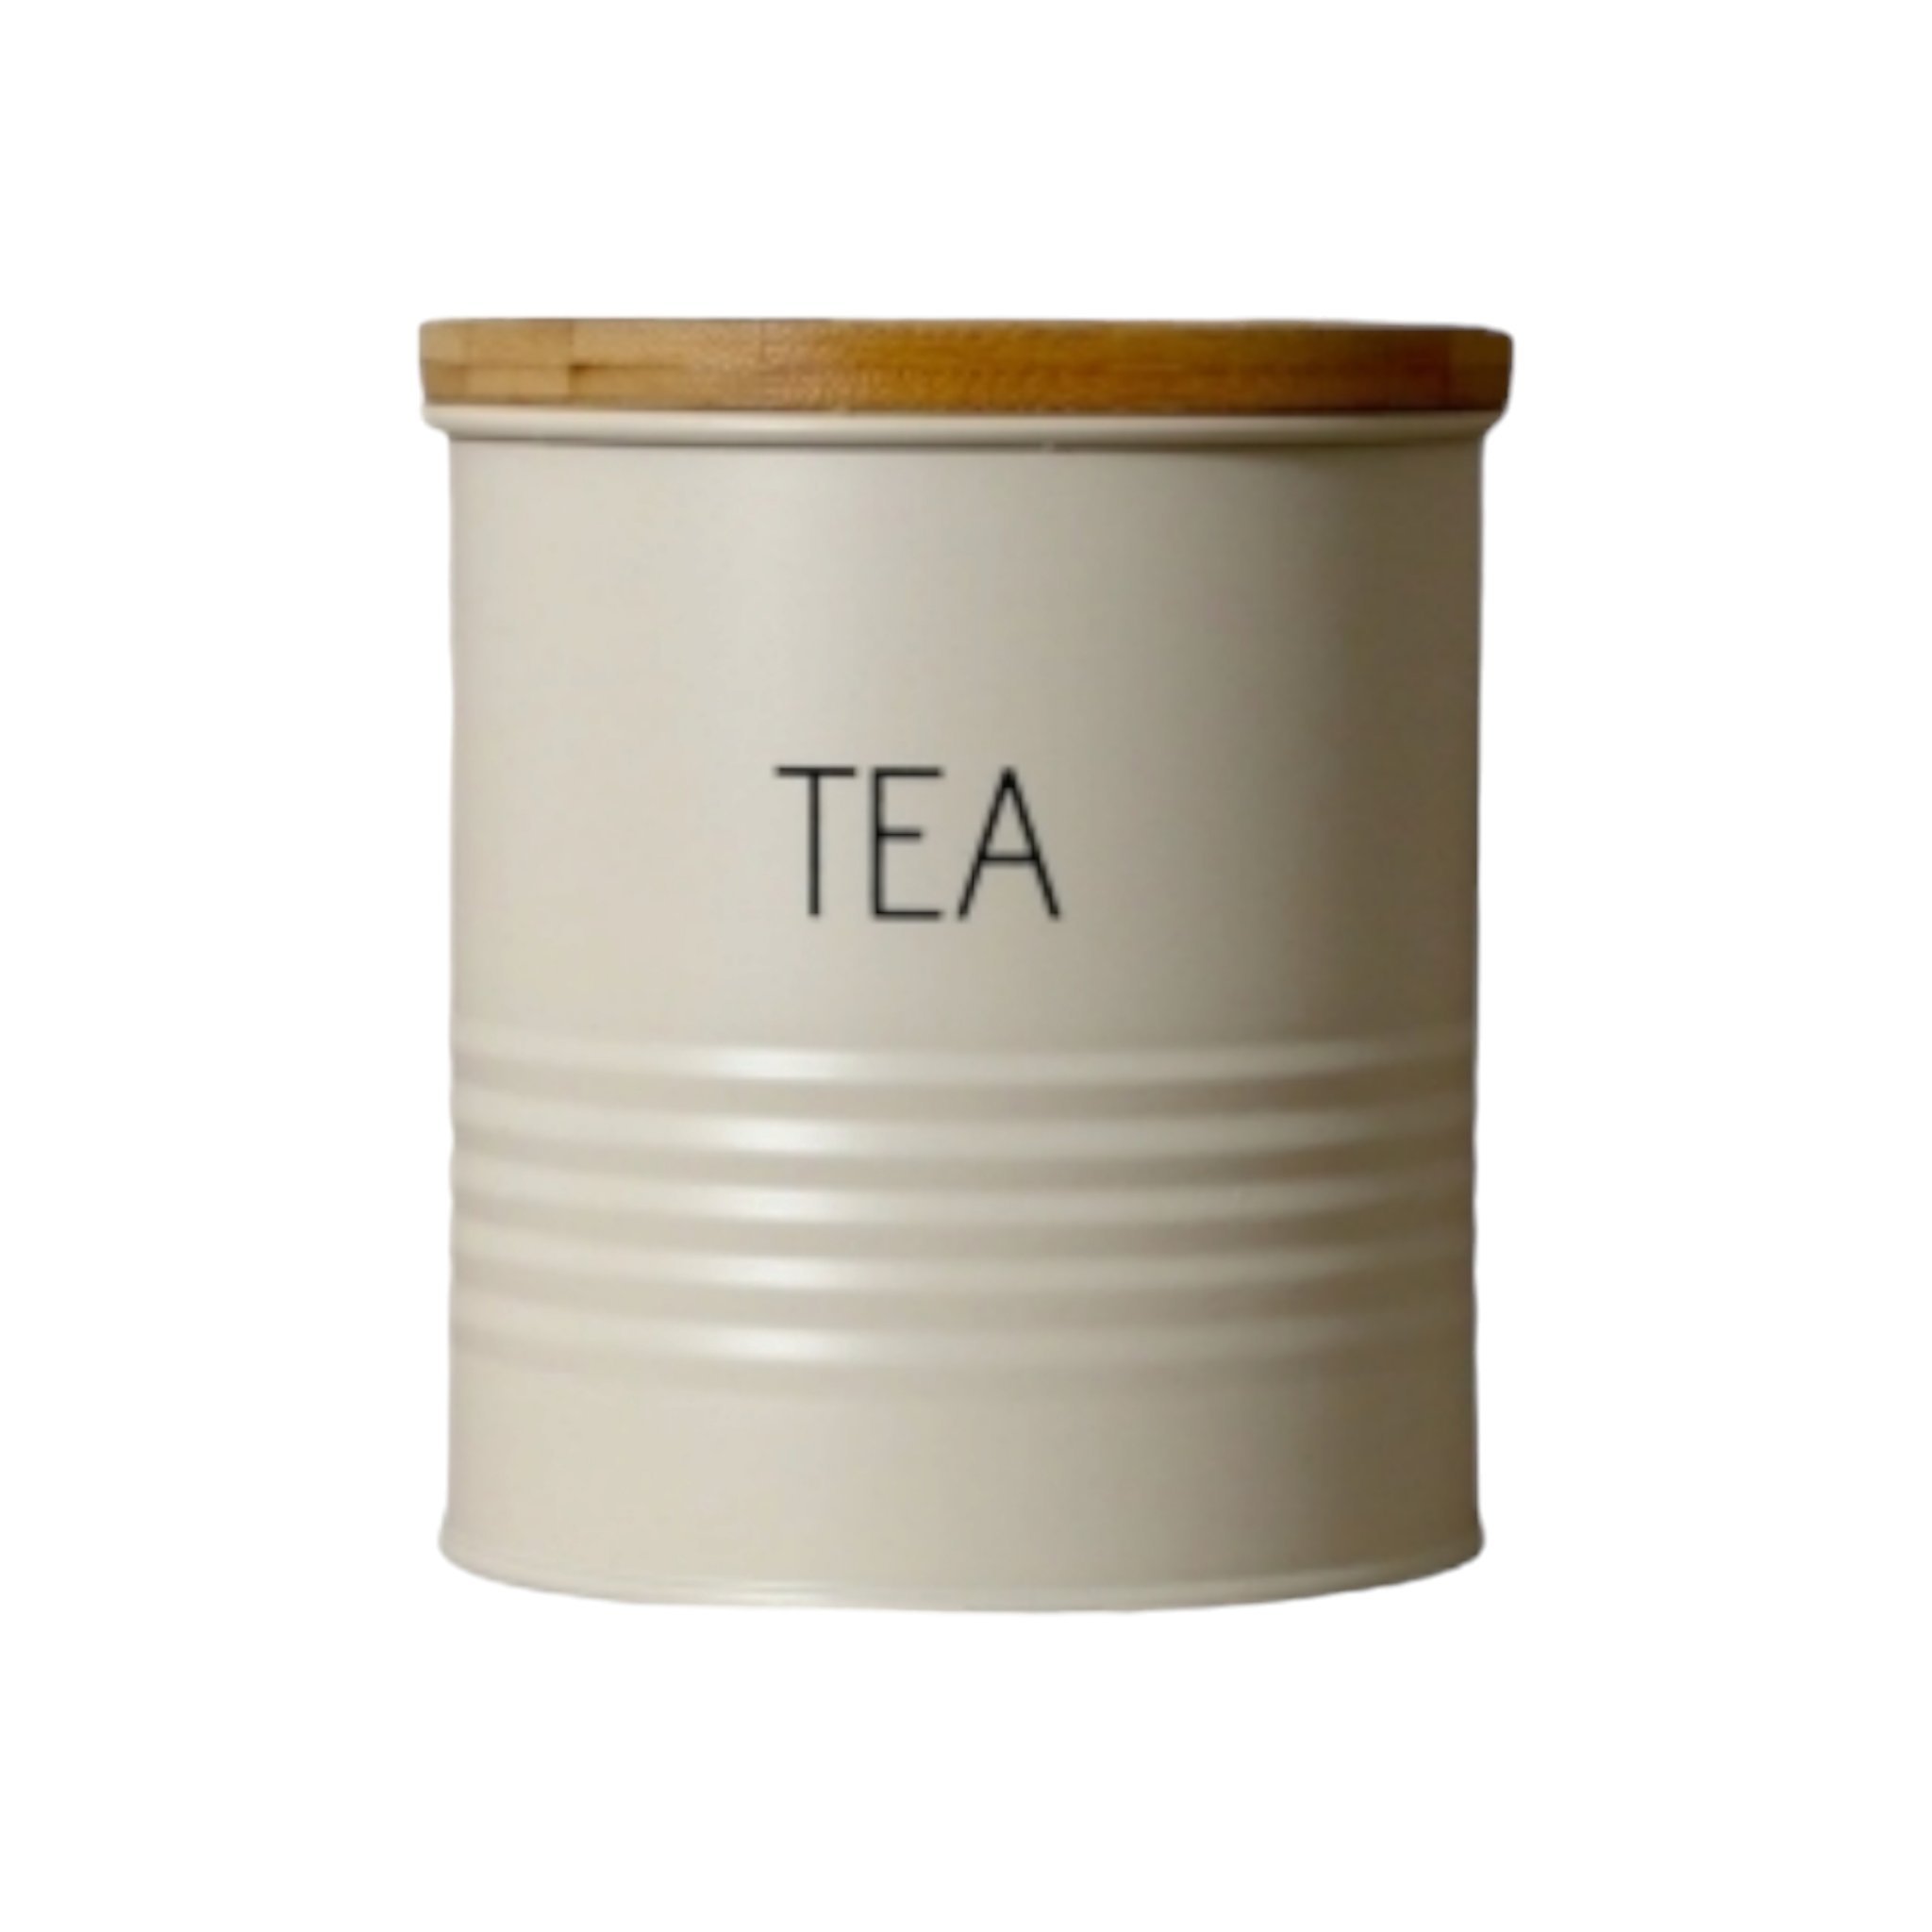 Aqua Tea Tin Canister Cream with Bamboo Lid 29900